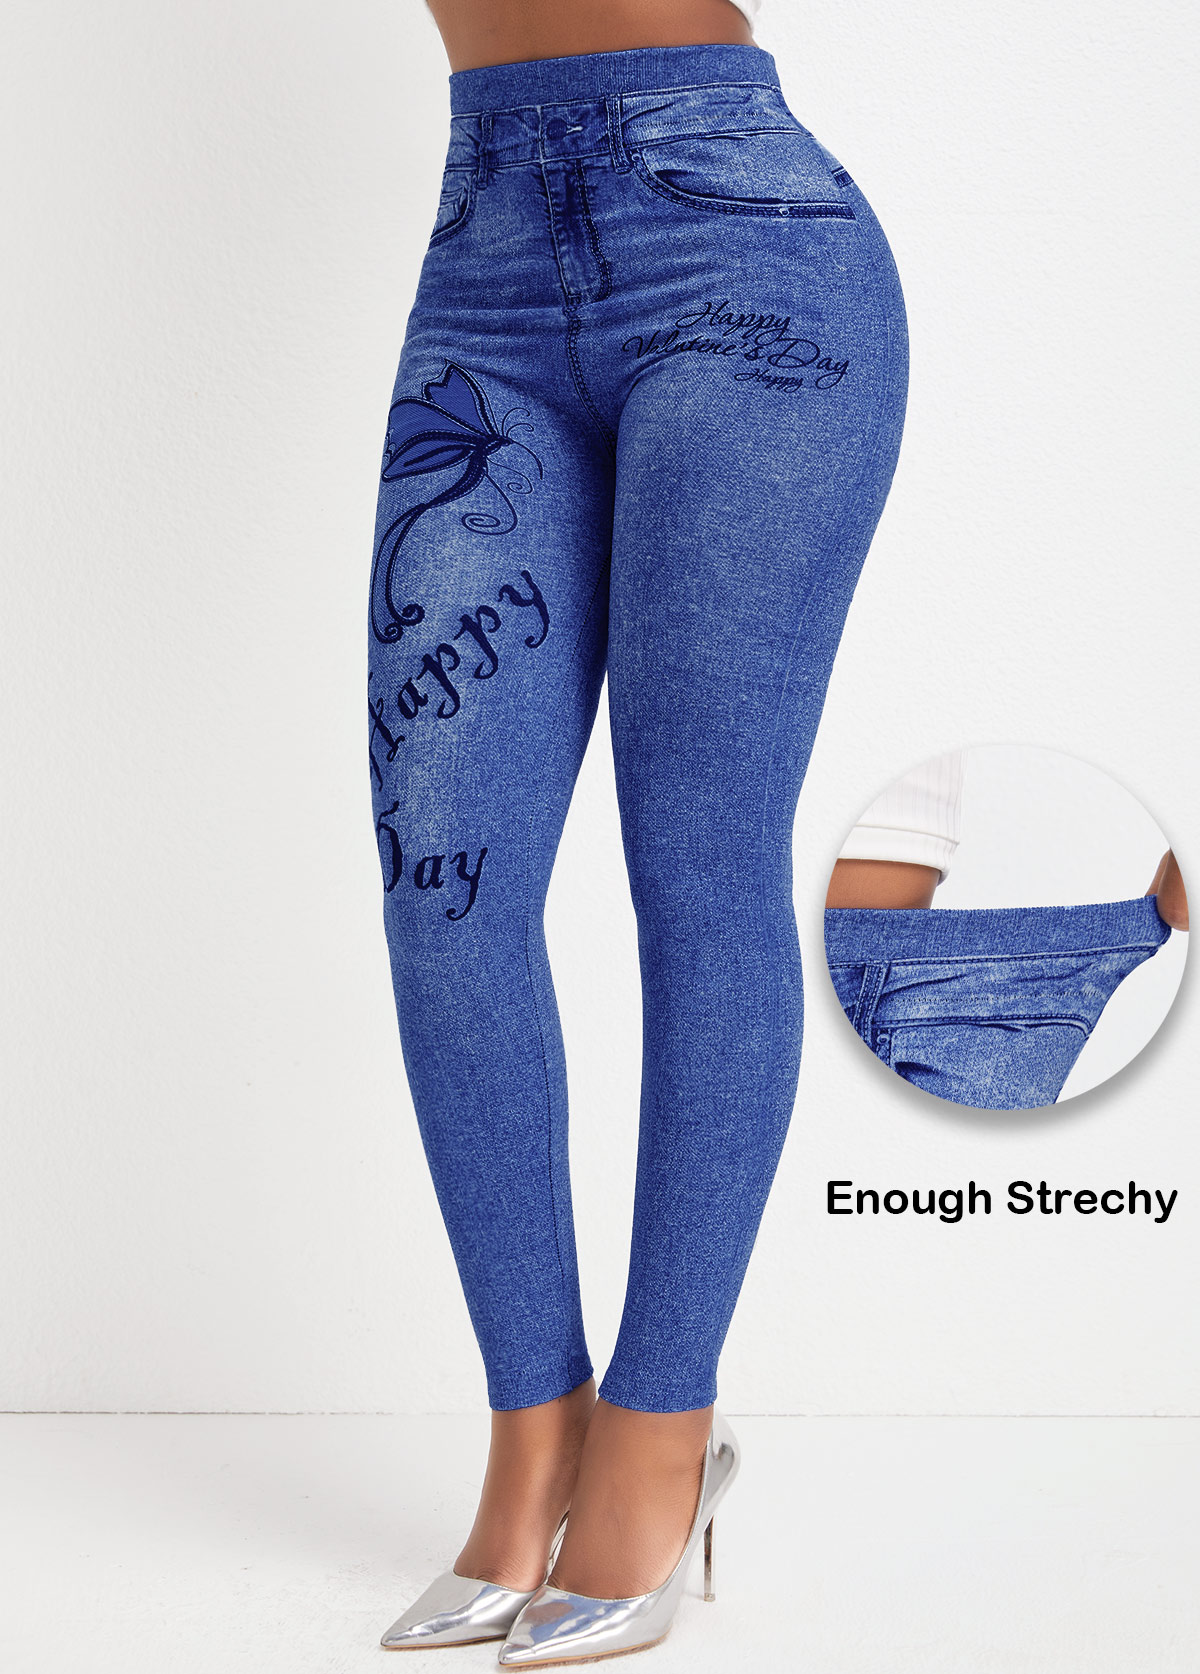 Jeansblaue Leggings mit hohem Bund und Schmetterlingsdruck